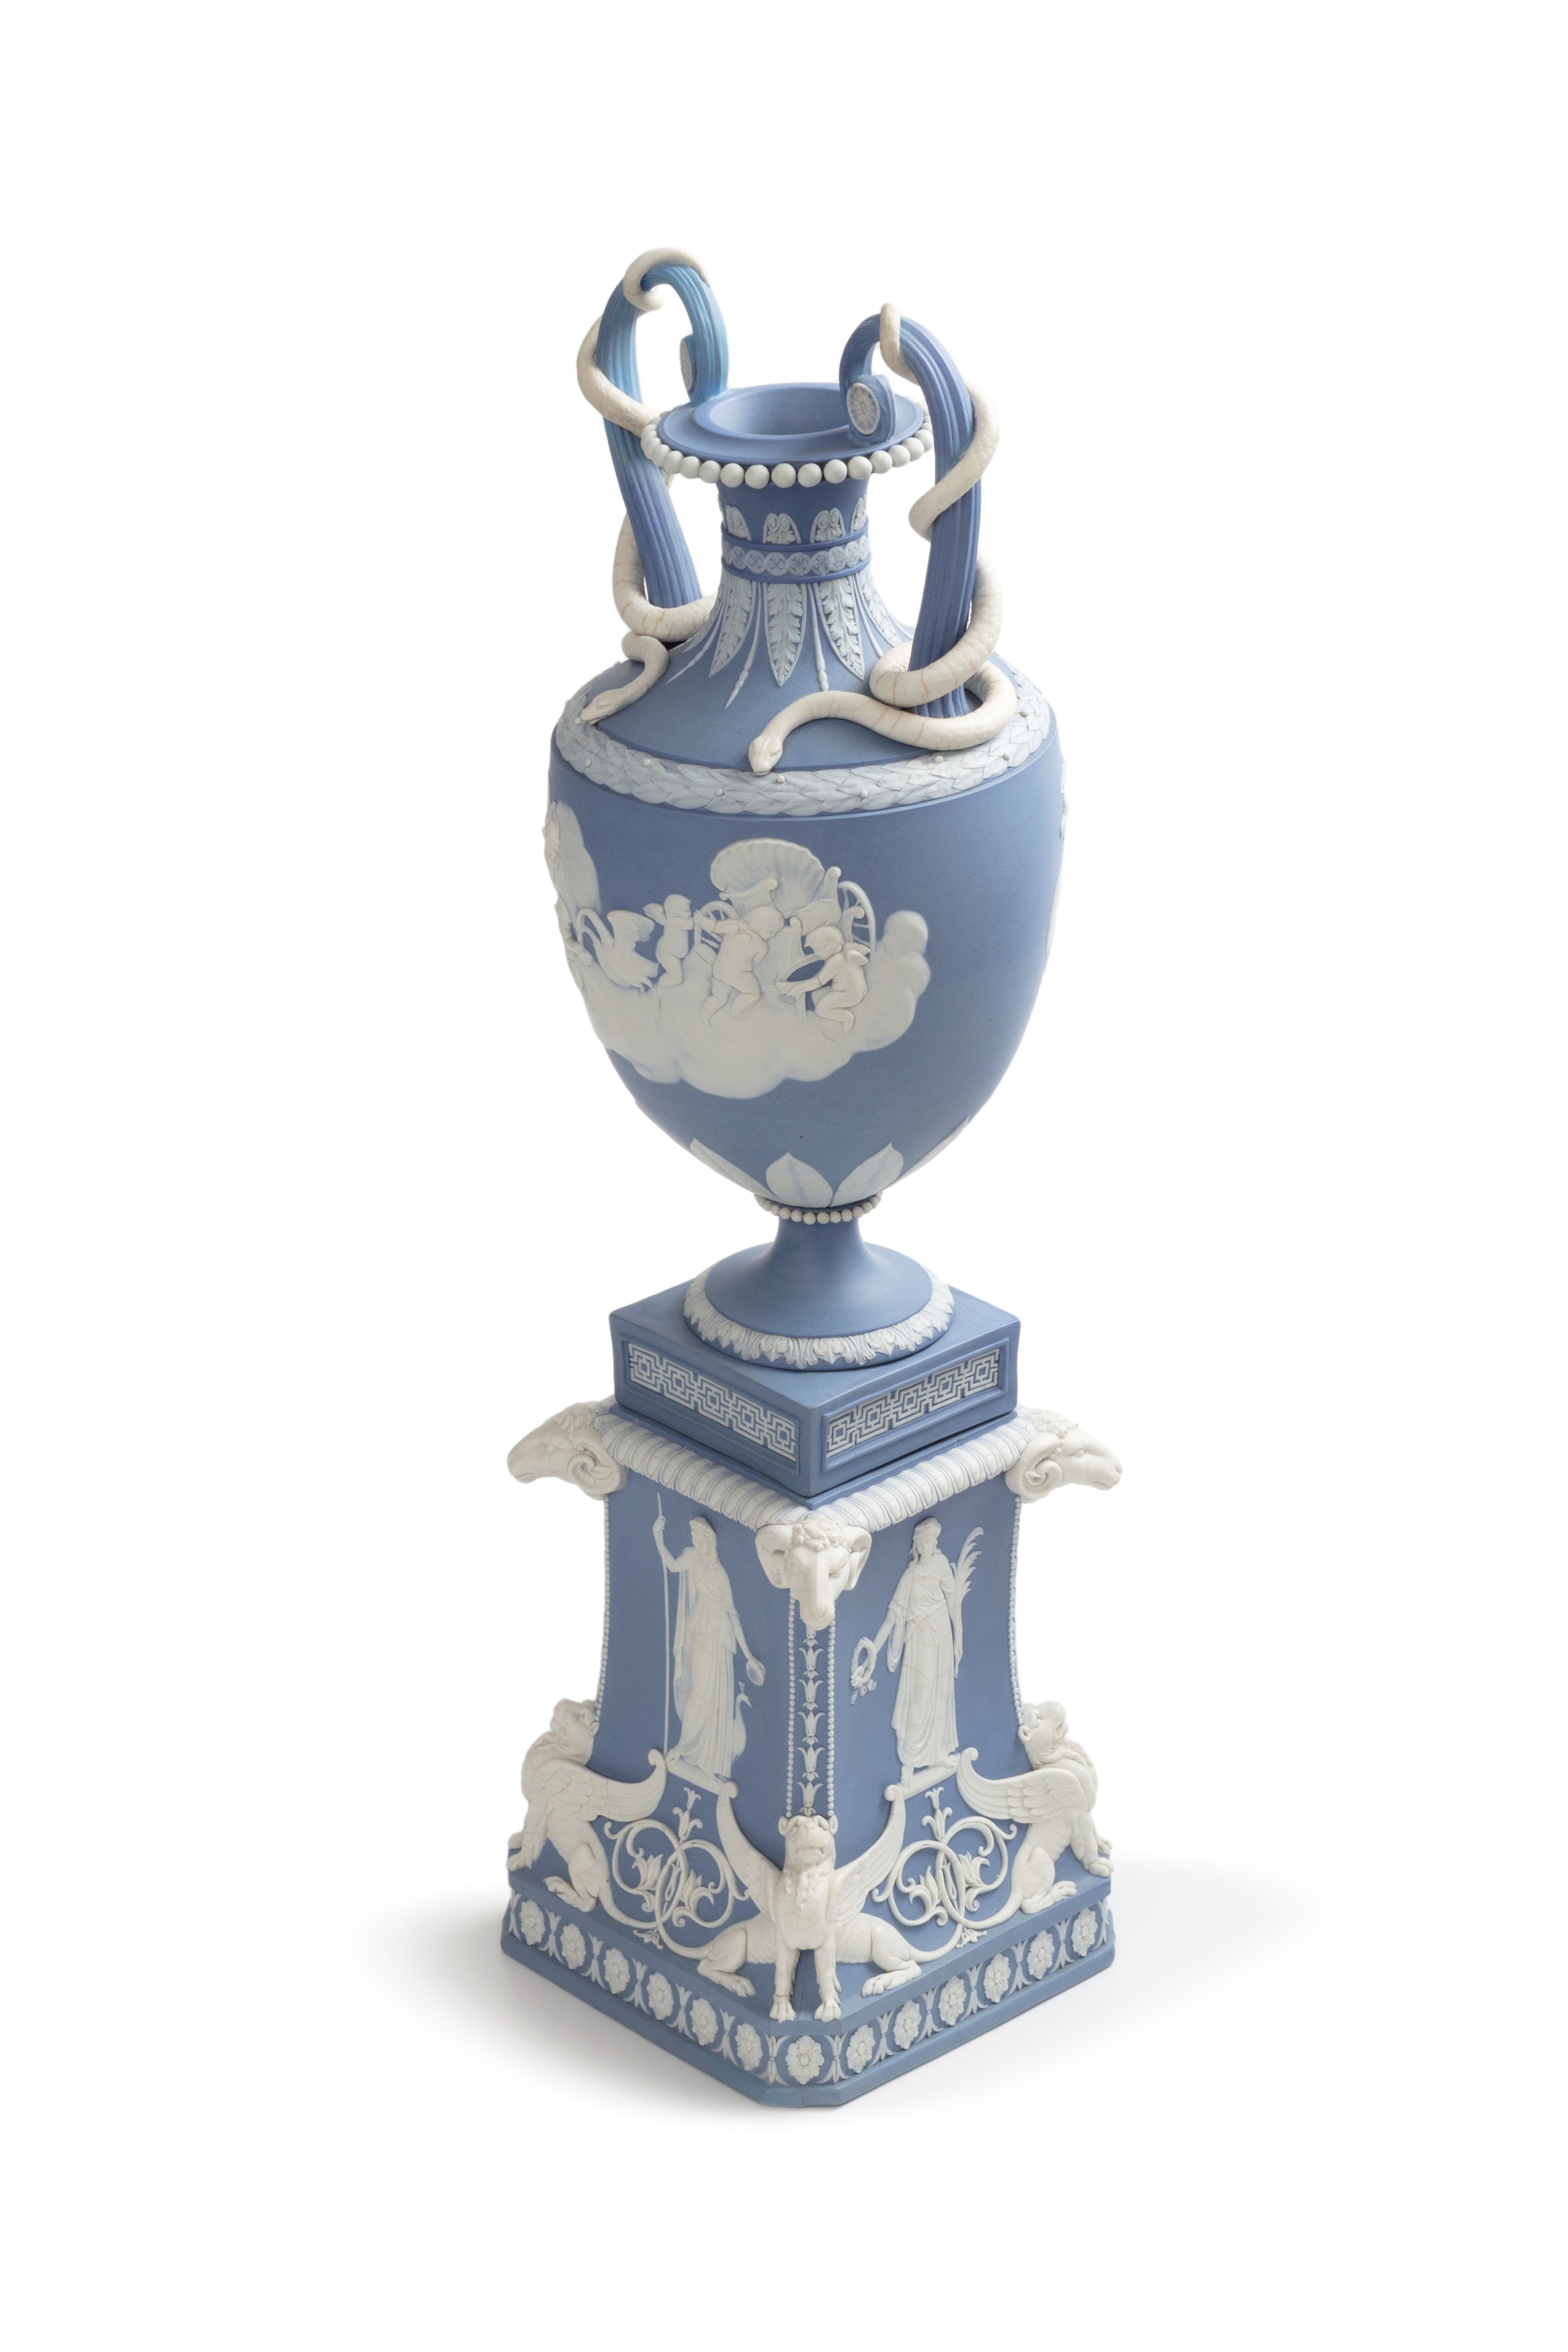 'Venus in her Chariot / Cupid Watering Swans' jasperware vase and pedestal by Wedgwood